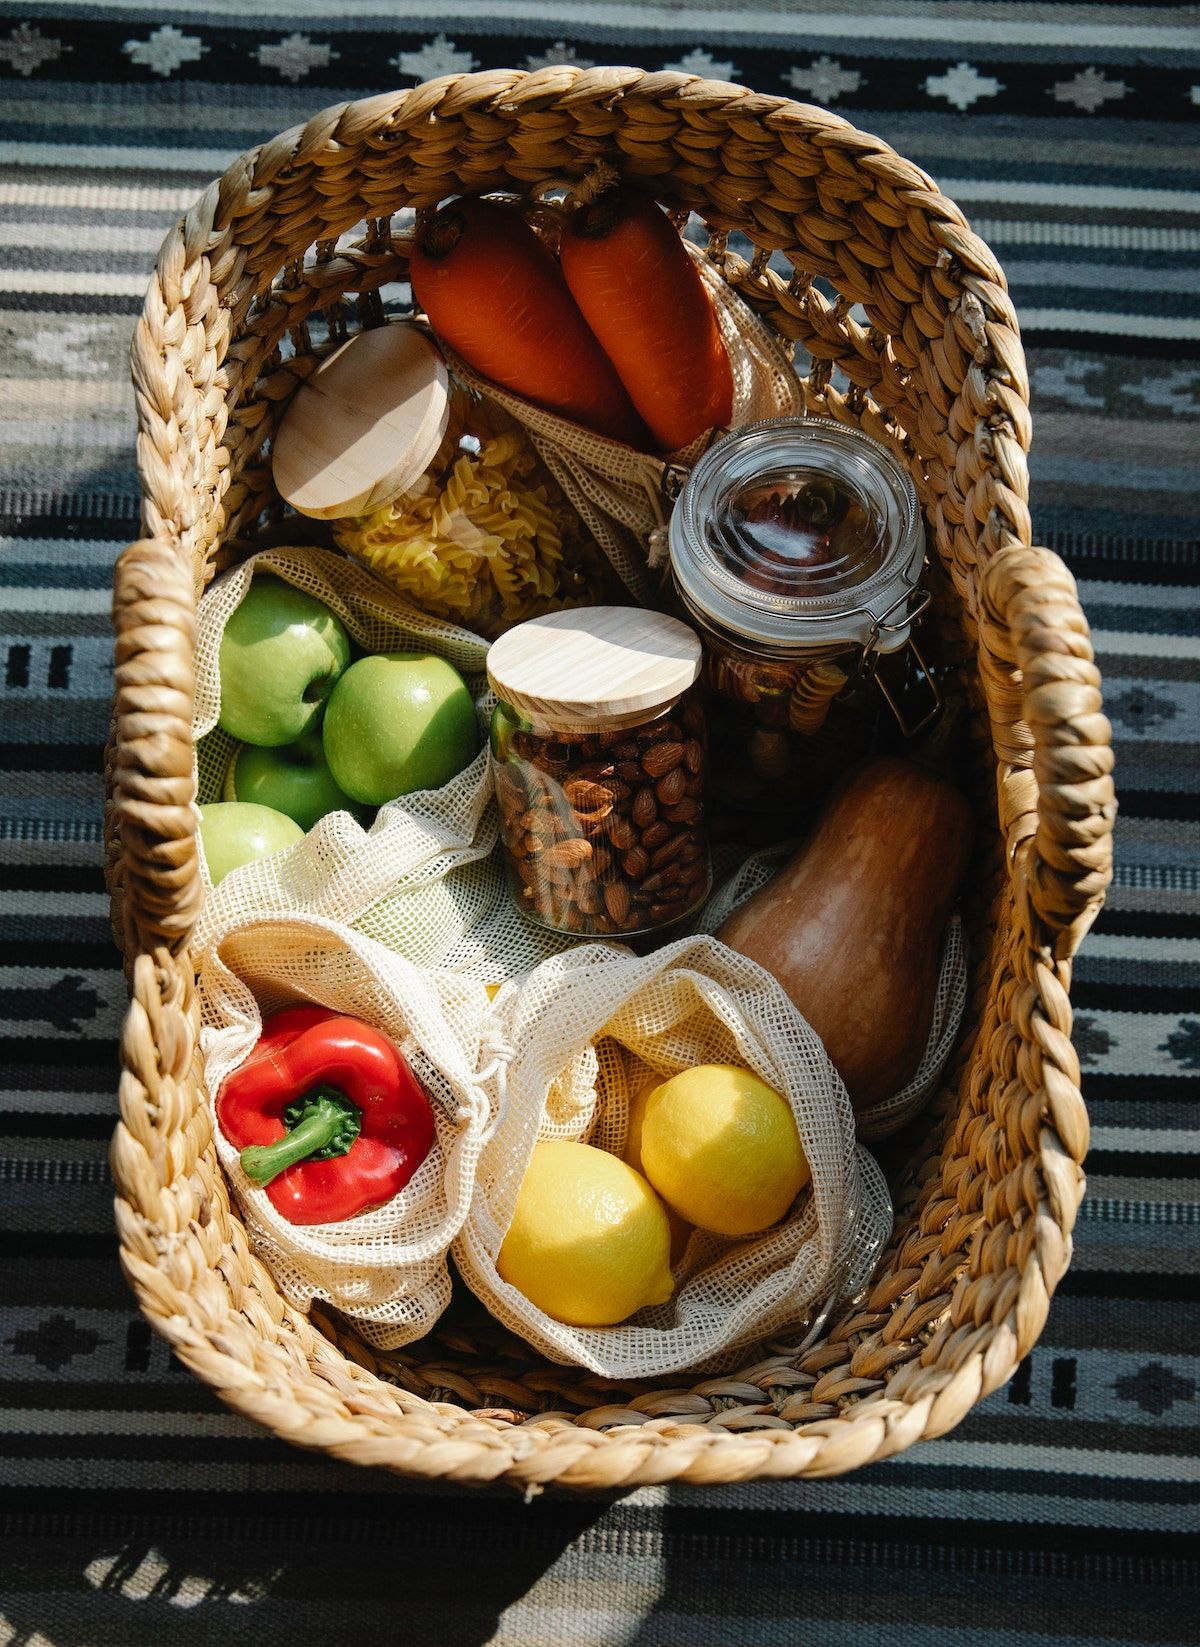 Ein Picknick-Korb mit Nudeln, Nüssen, Obst und Gemüse liegt auf einer Decke.